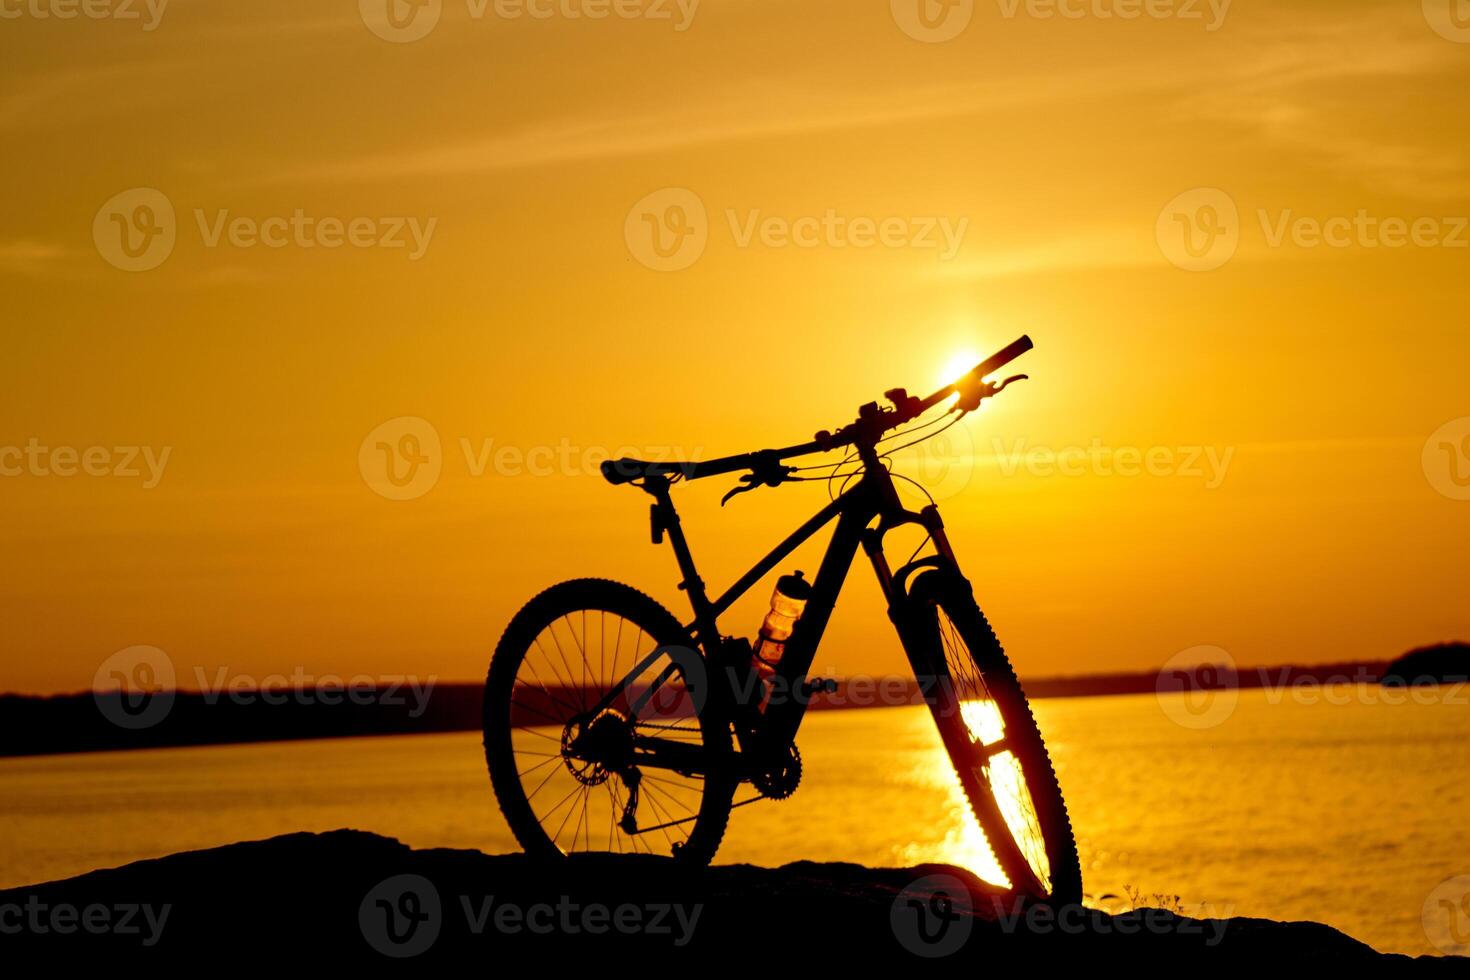 bicyclette à côté de l'eau avec le coucher du soleil. actif mode de vie concept photo